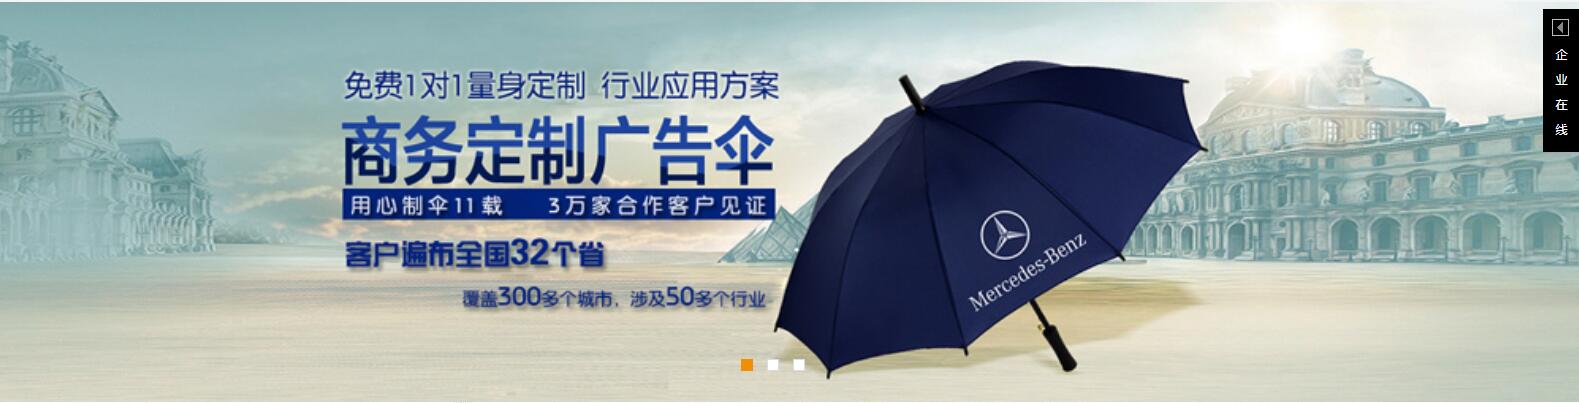 安徽太阳伞厂定做安徽广告太阳伞